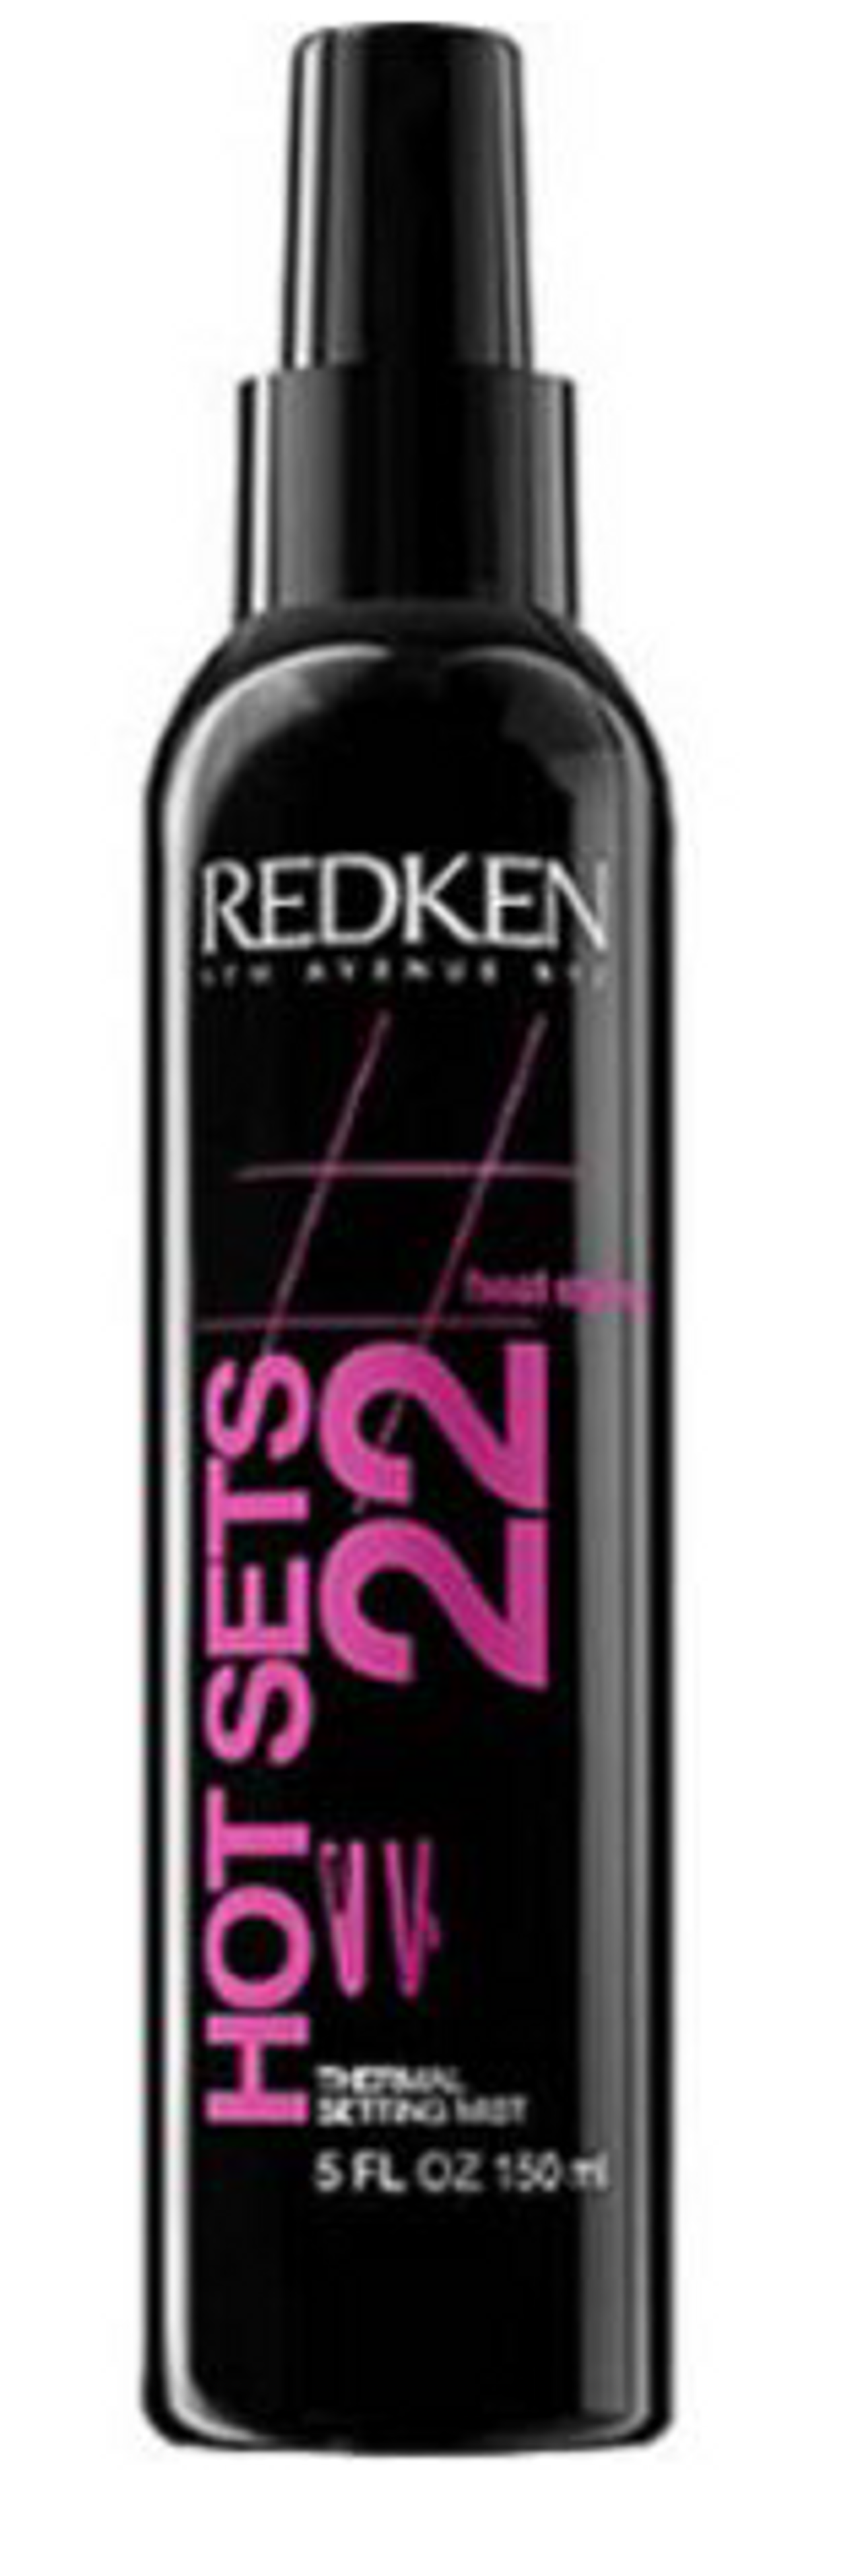 Redken High Rise Volume Duo Volumizer Gel-Creme 150ml.